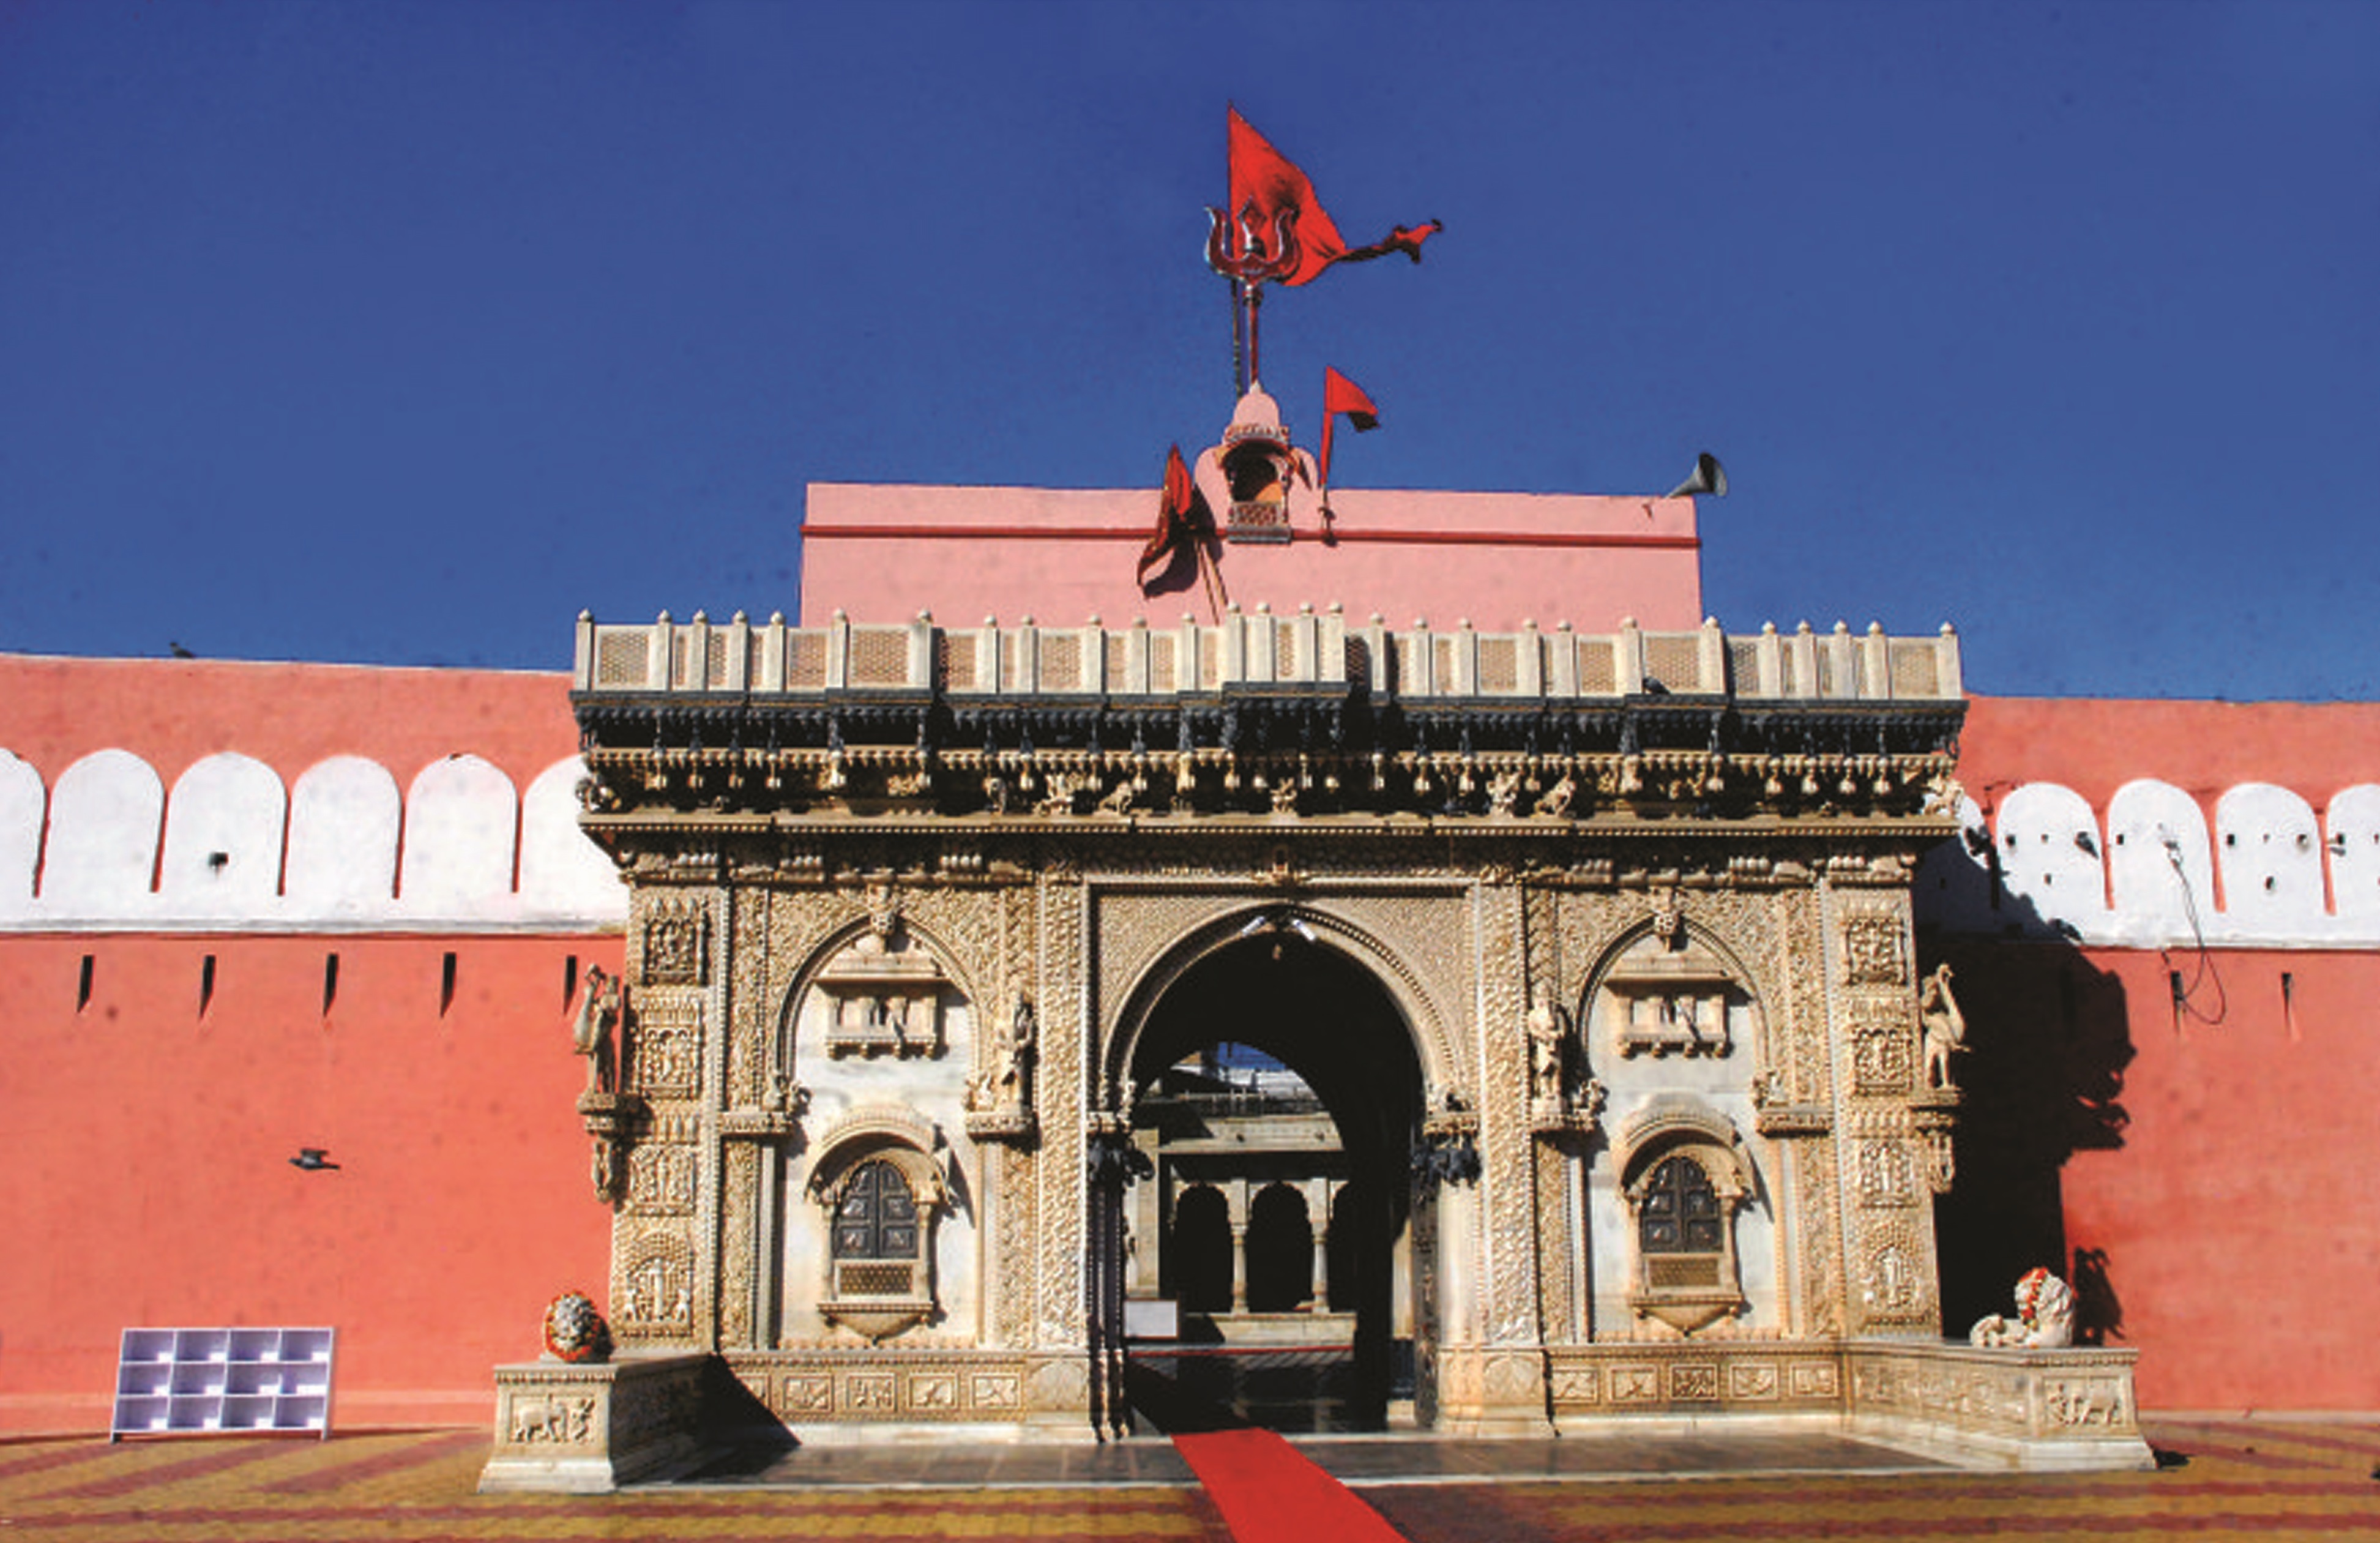 Deshnok Karni Mata Temple